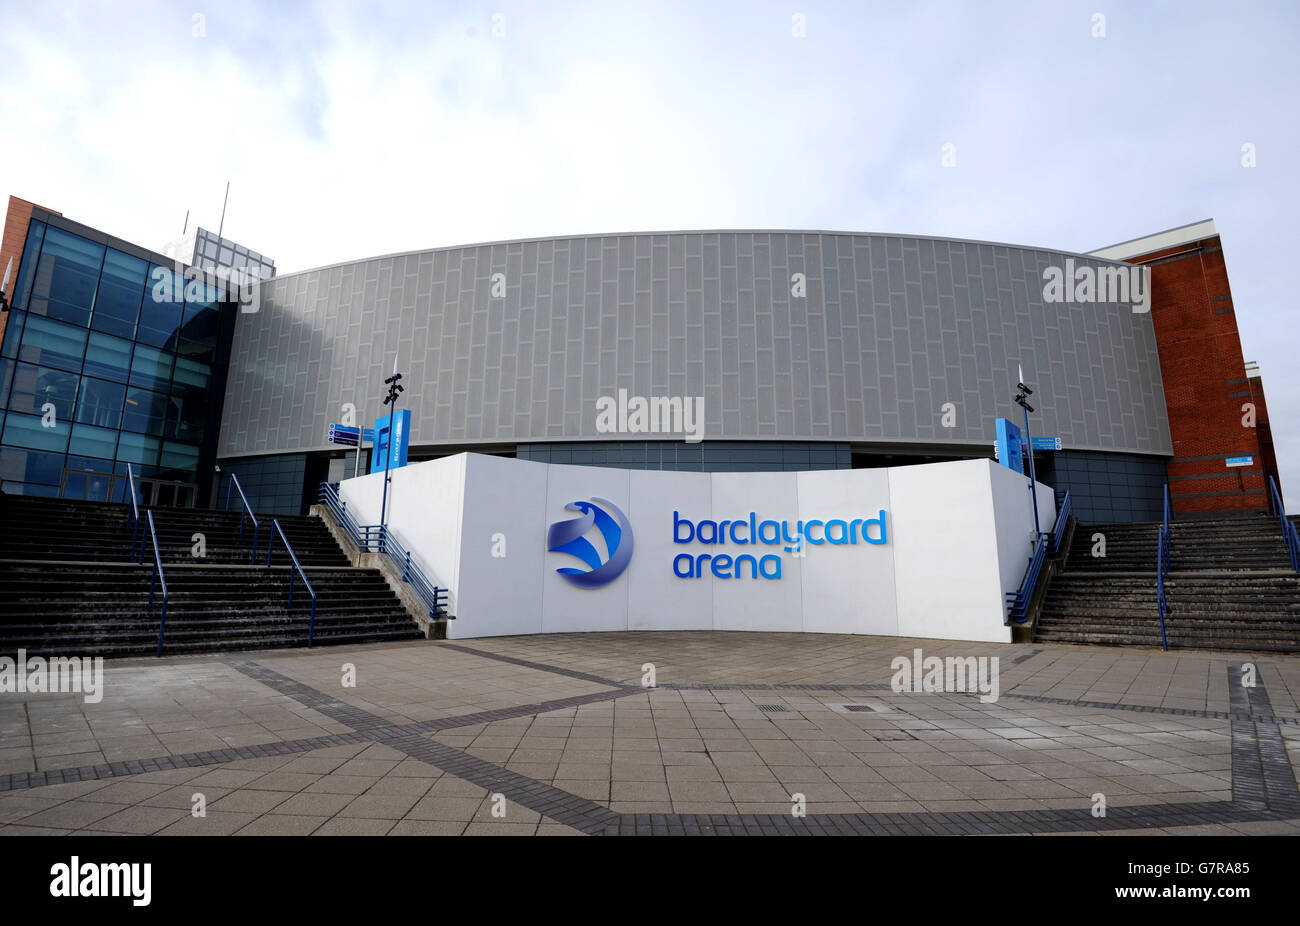 Une vue générale de la Barclaycard Arena pendant le deuxième jour des 2015 Yonex All England Badminton Championships à la Barclaycard Arena, Birmingham. Banque D'Images